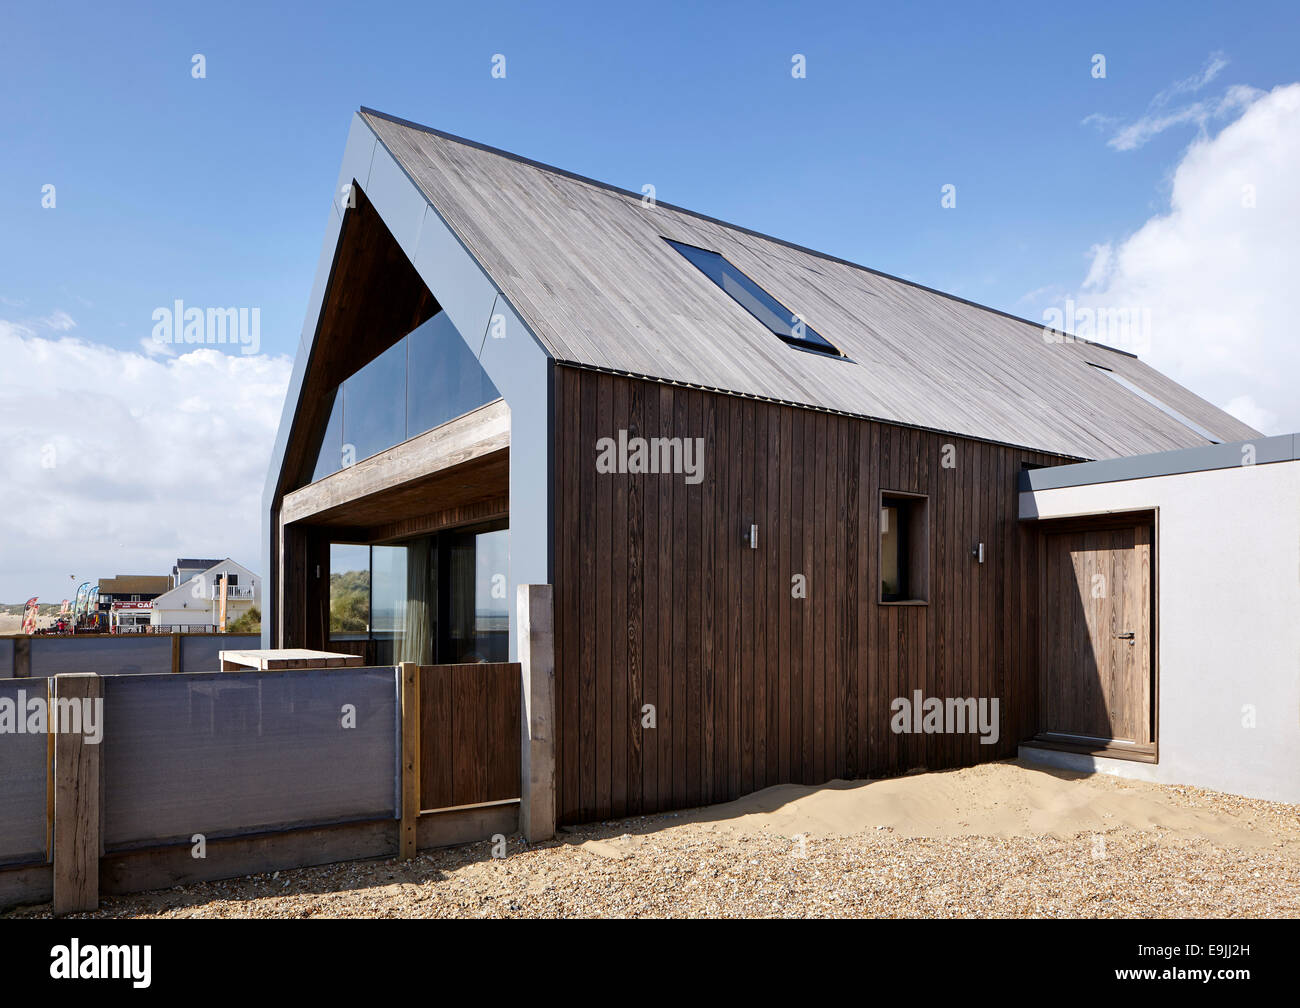 Camber Sands Beach Houses, Rye, Vereinigtes Königreich. Architekt: Walker und Martin, 2014. Blick auf Holz verkleidete Fassade und Eingang. Stockfoto